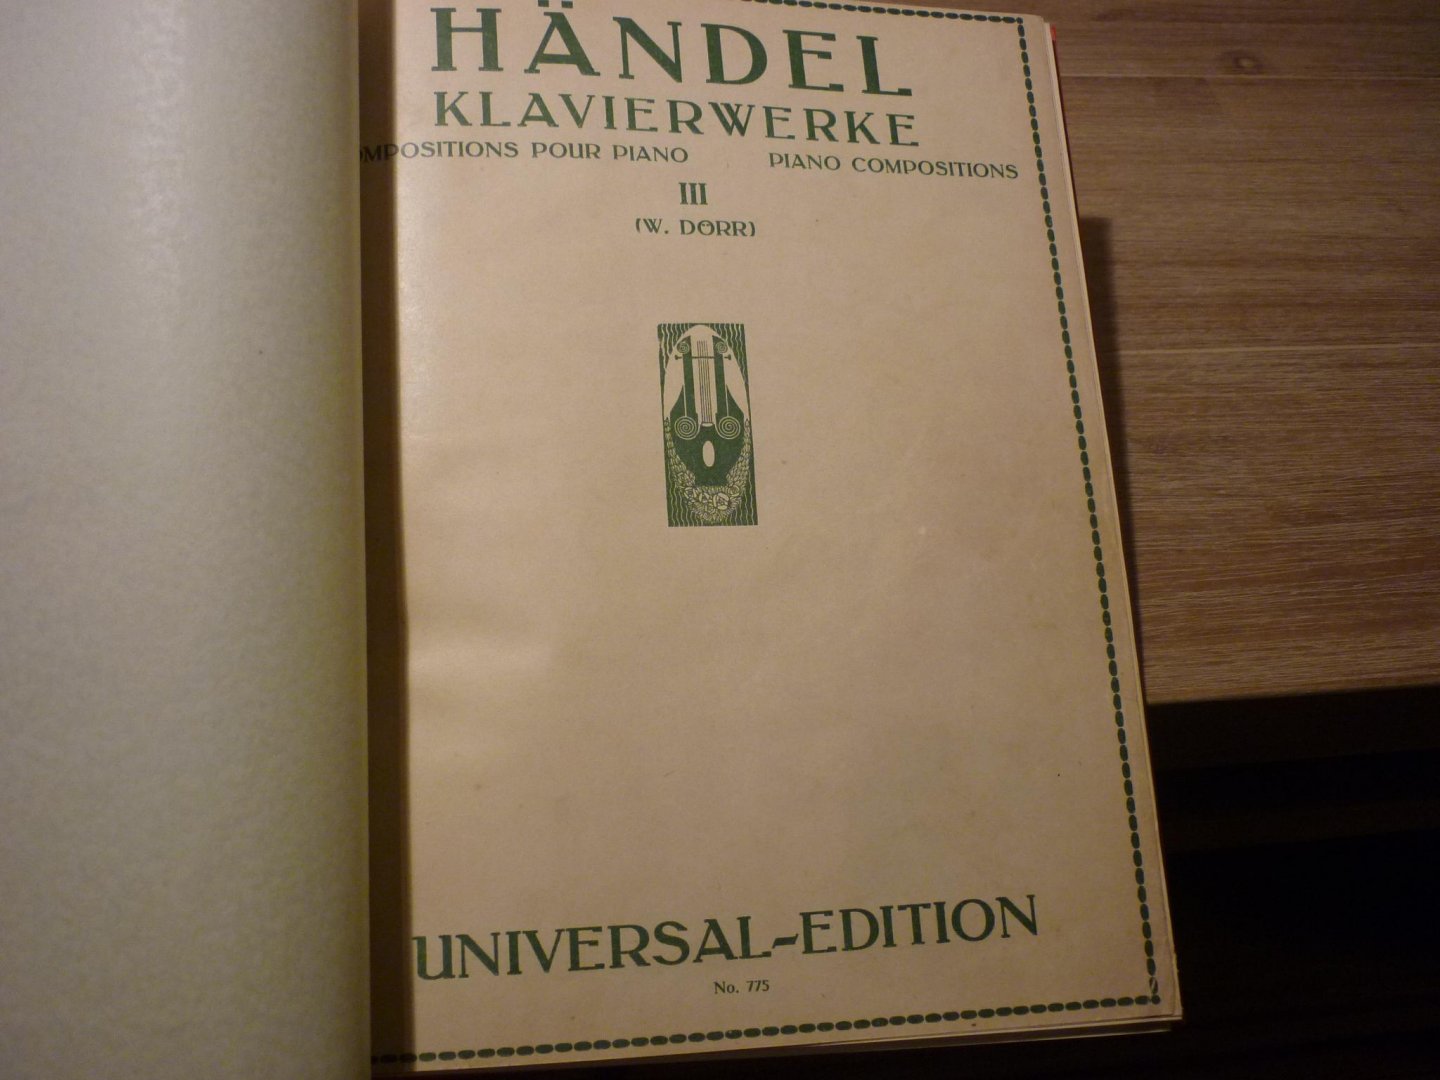 Handel; G.F. (1685 - 1759) - Klavierwerke Compositions; Oeuvres pour piano - III  /  12 leichte Klavierstucke